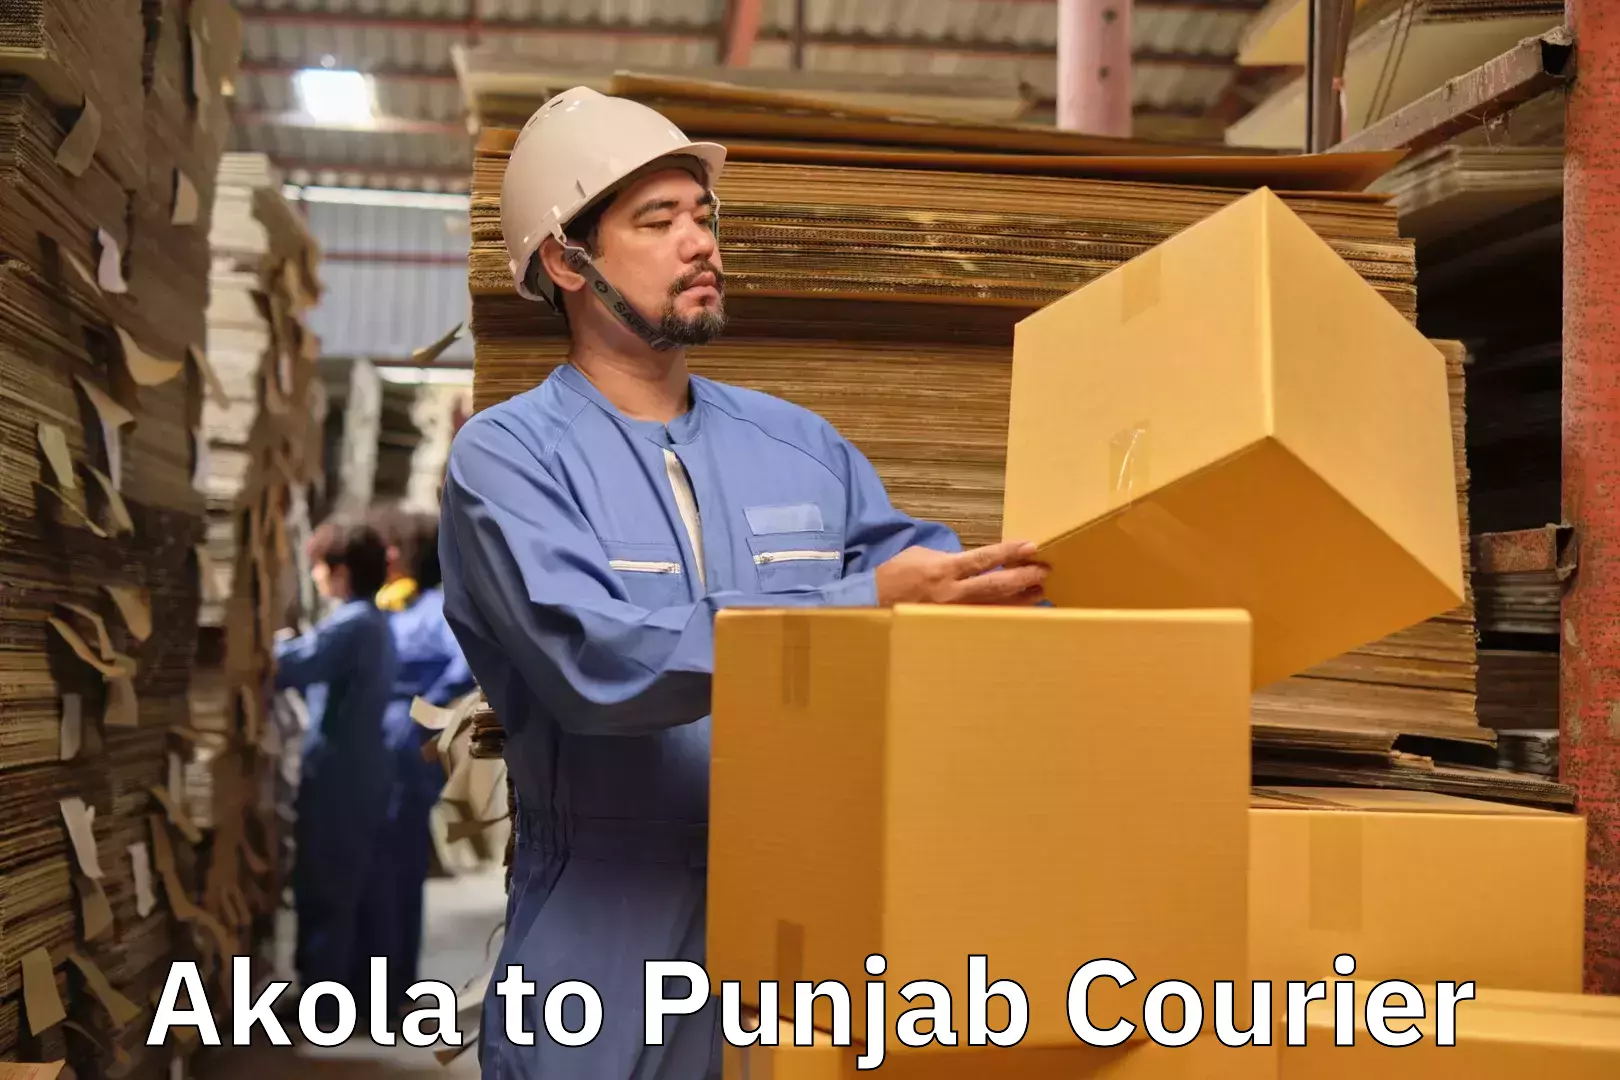 Luggage courier network Akola to Central University of Punjab Bathinda